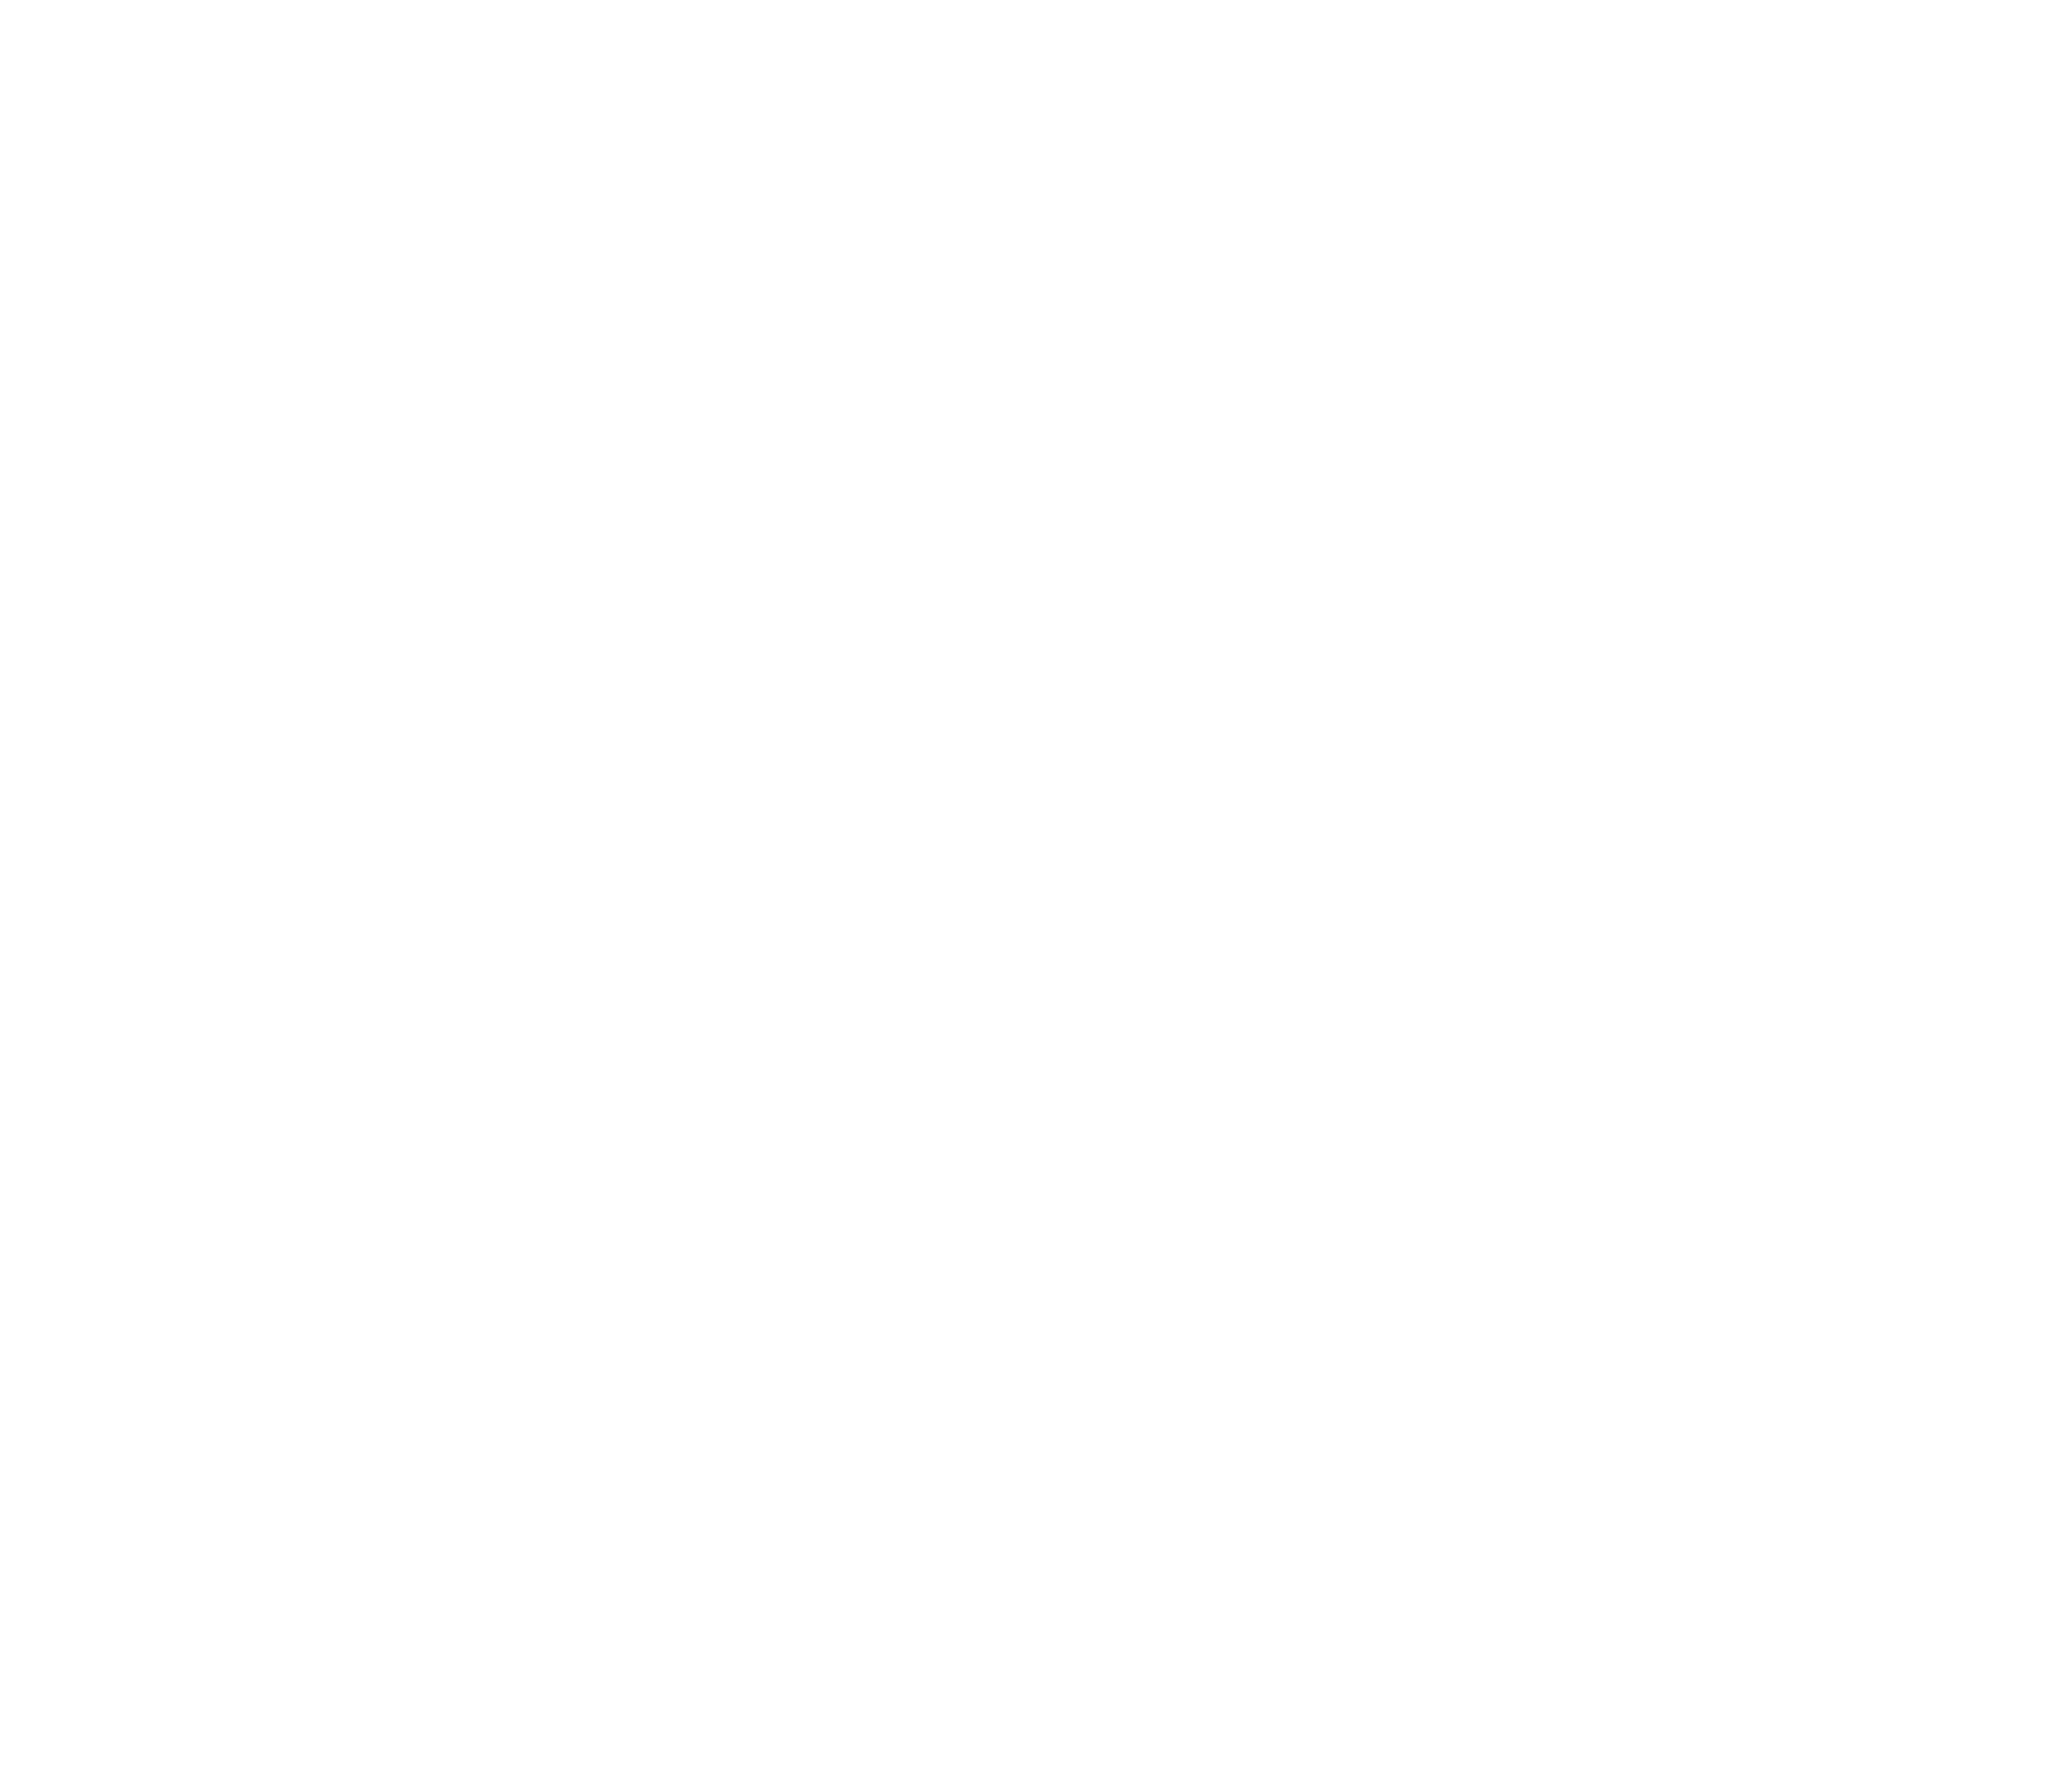 Romolo marchio def BN